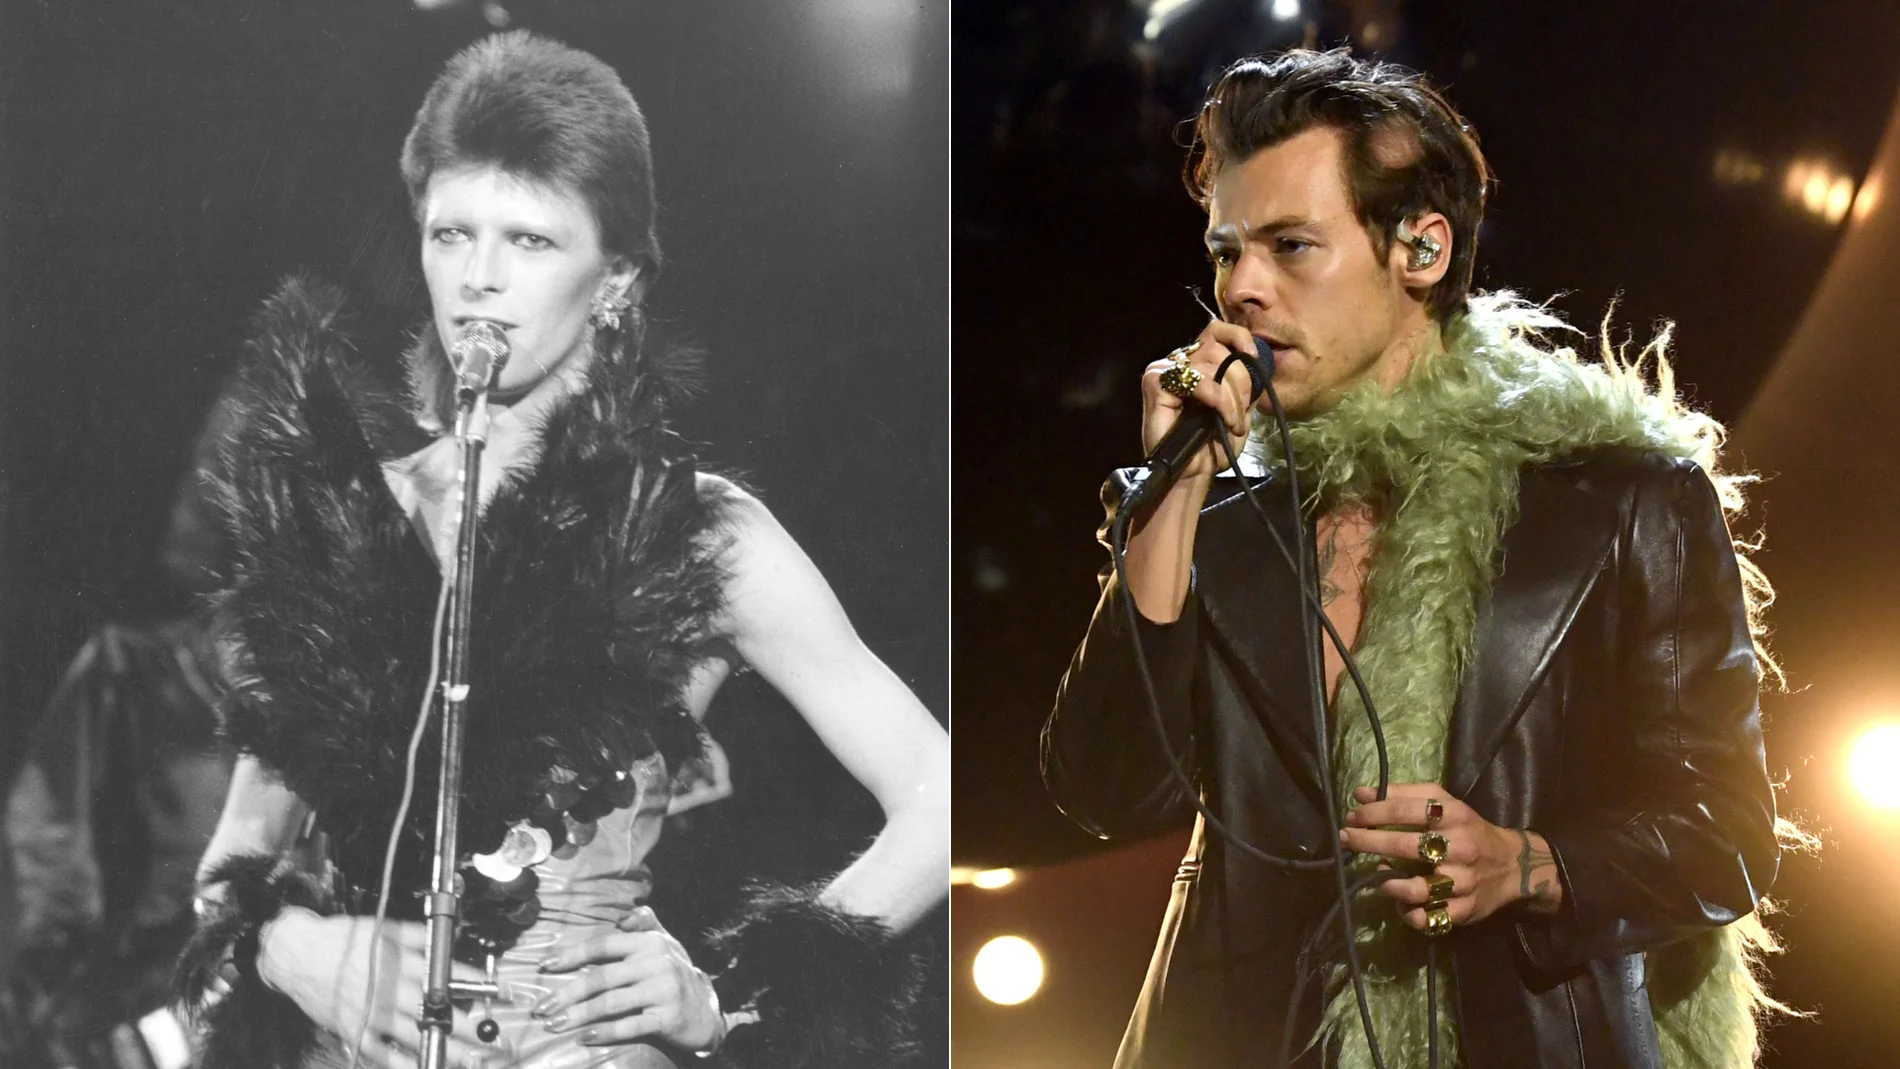 Una imagen de David Bowie en 1973 frente a otra de Harry Styles en 2021.